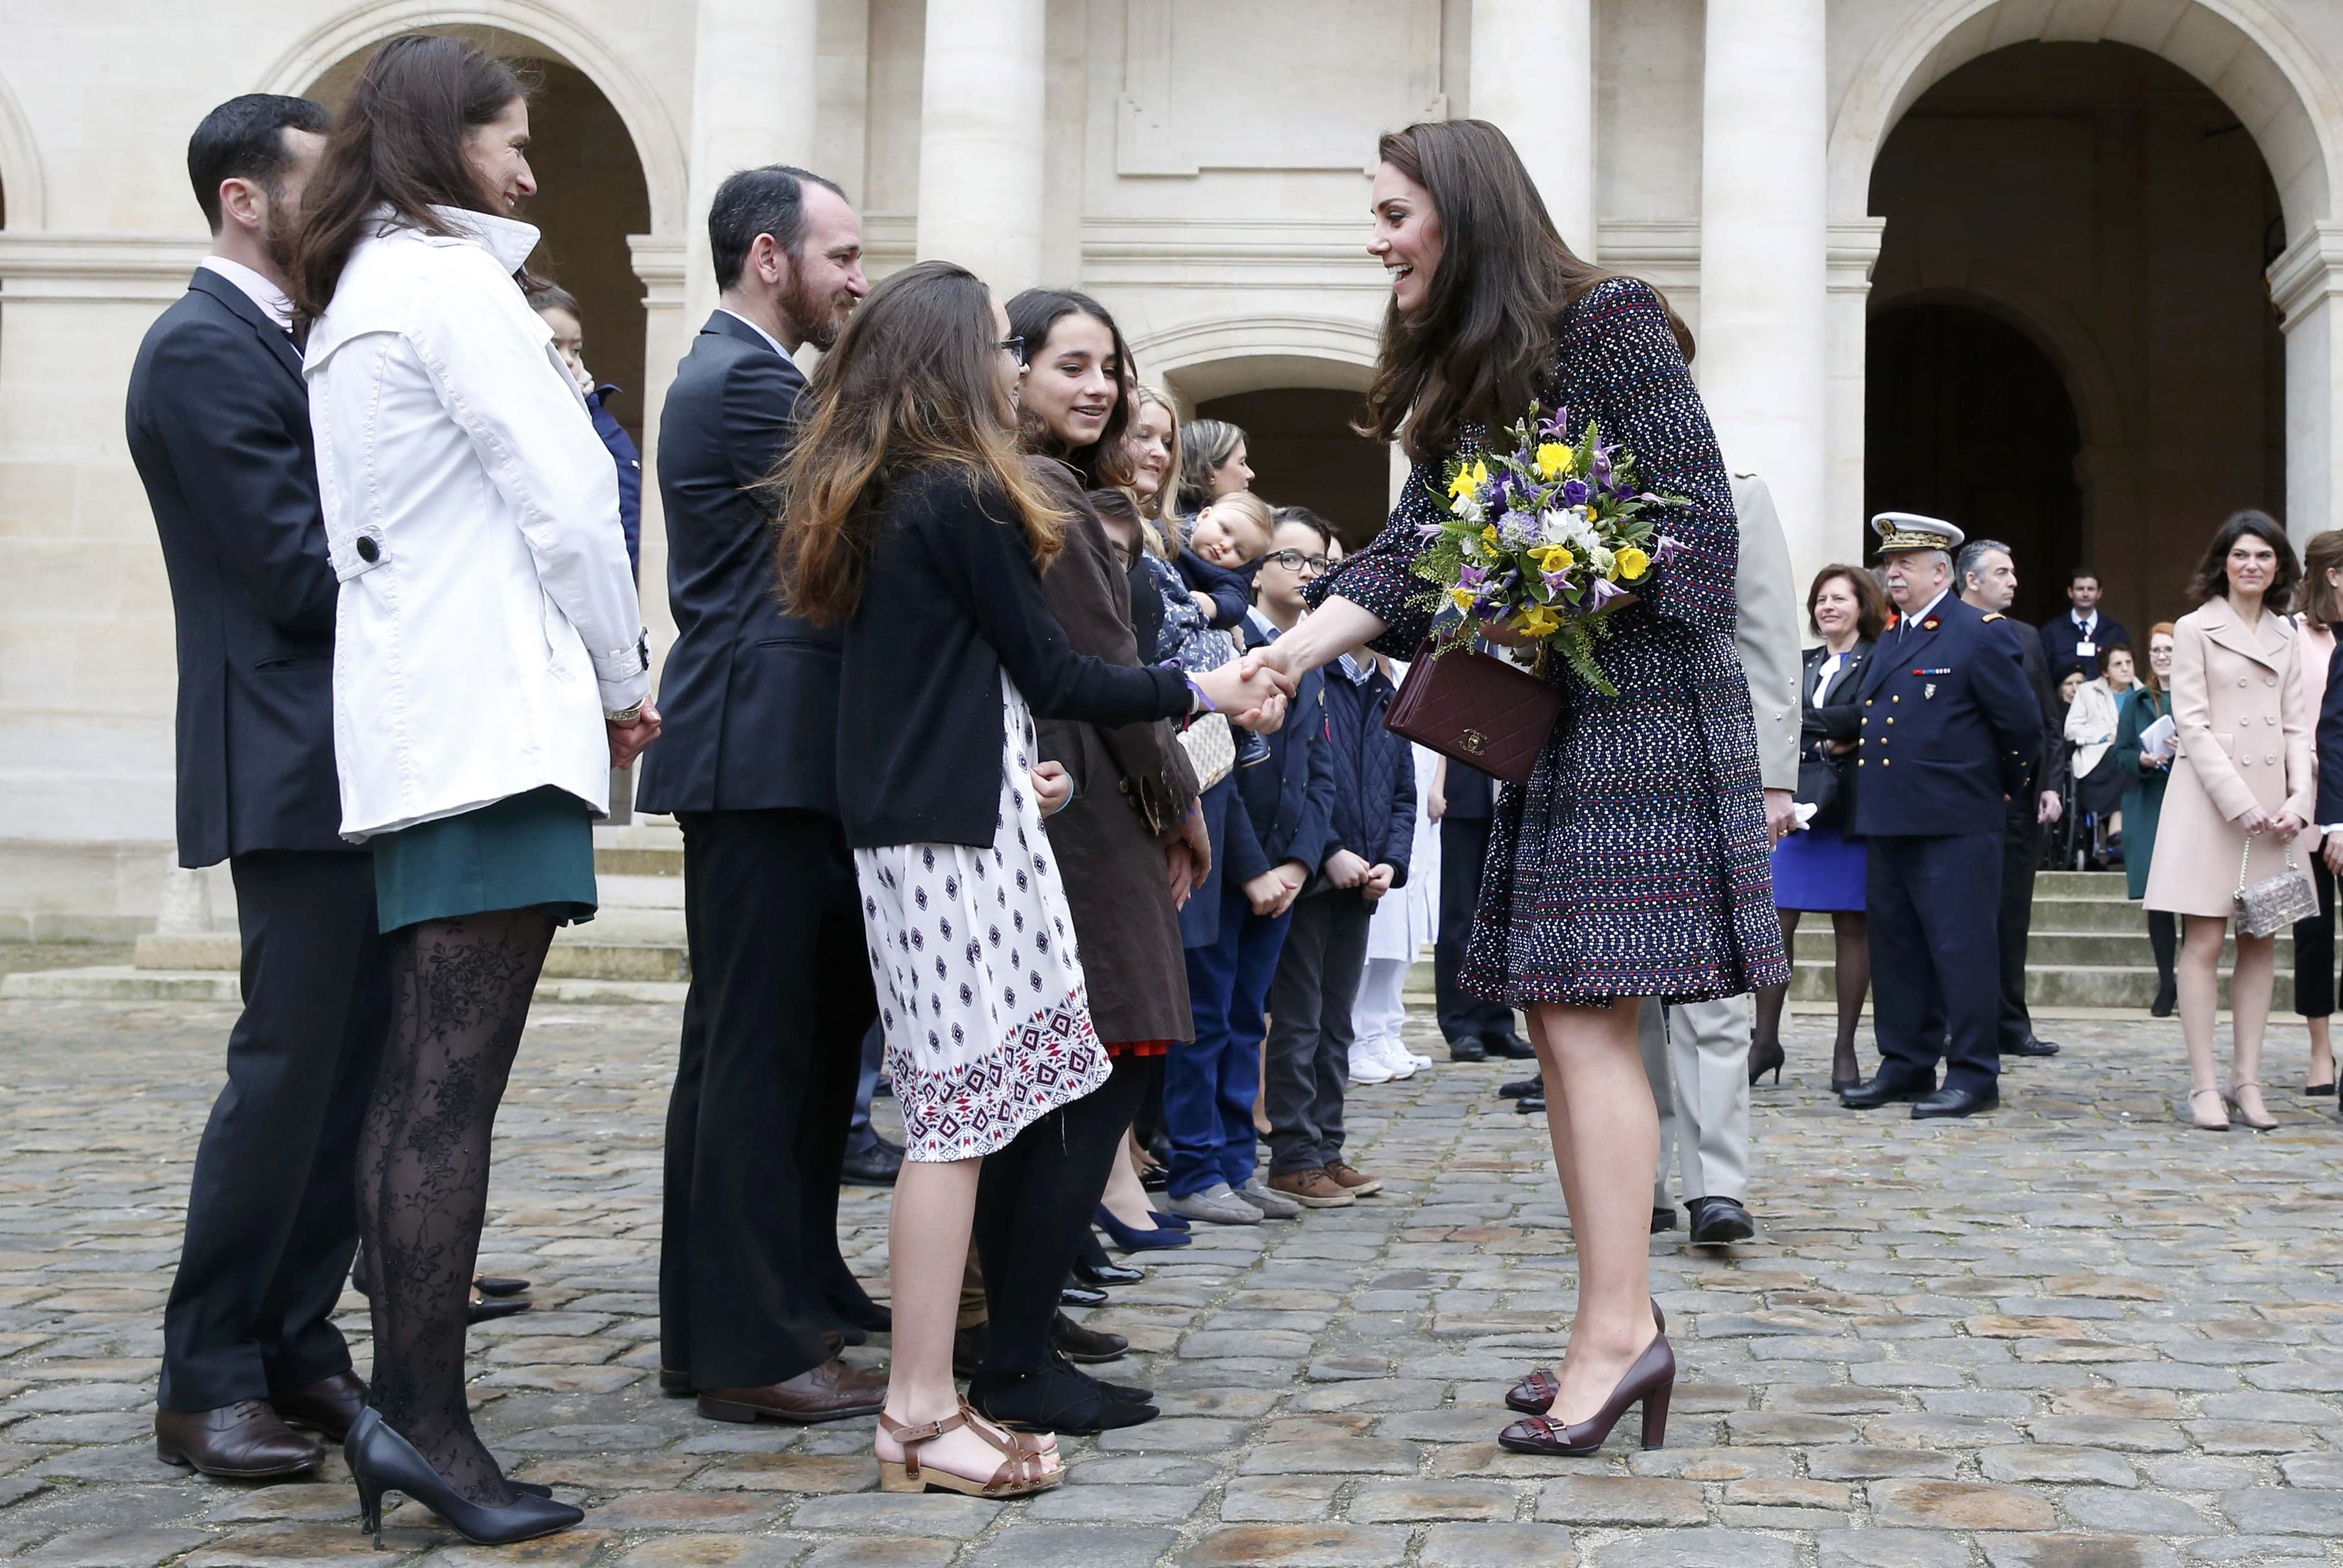 الأميرة كاثرين تصافح محبيها  بعد زيارة لفندق قصر الانفاليد في باريس